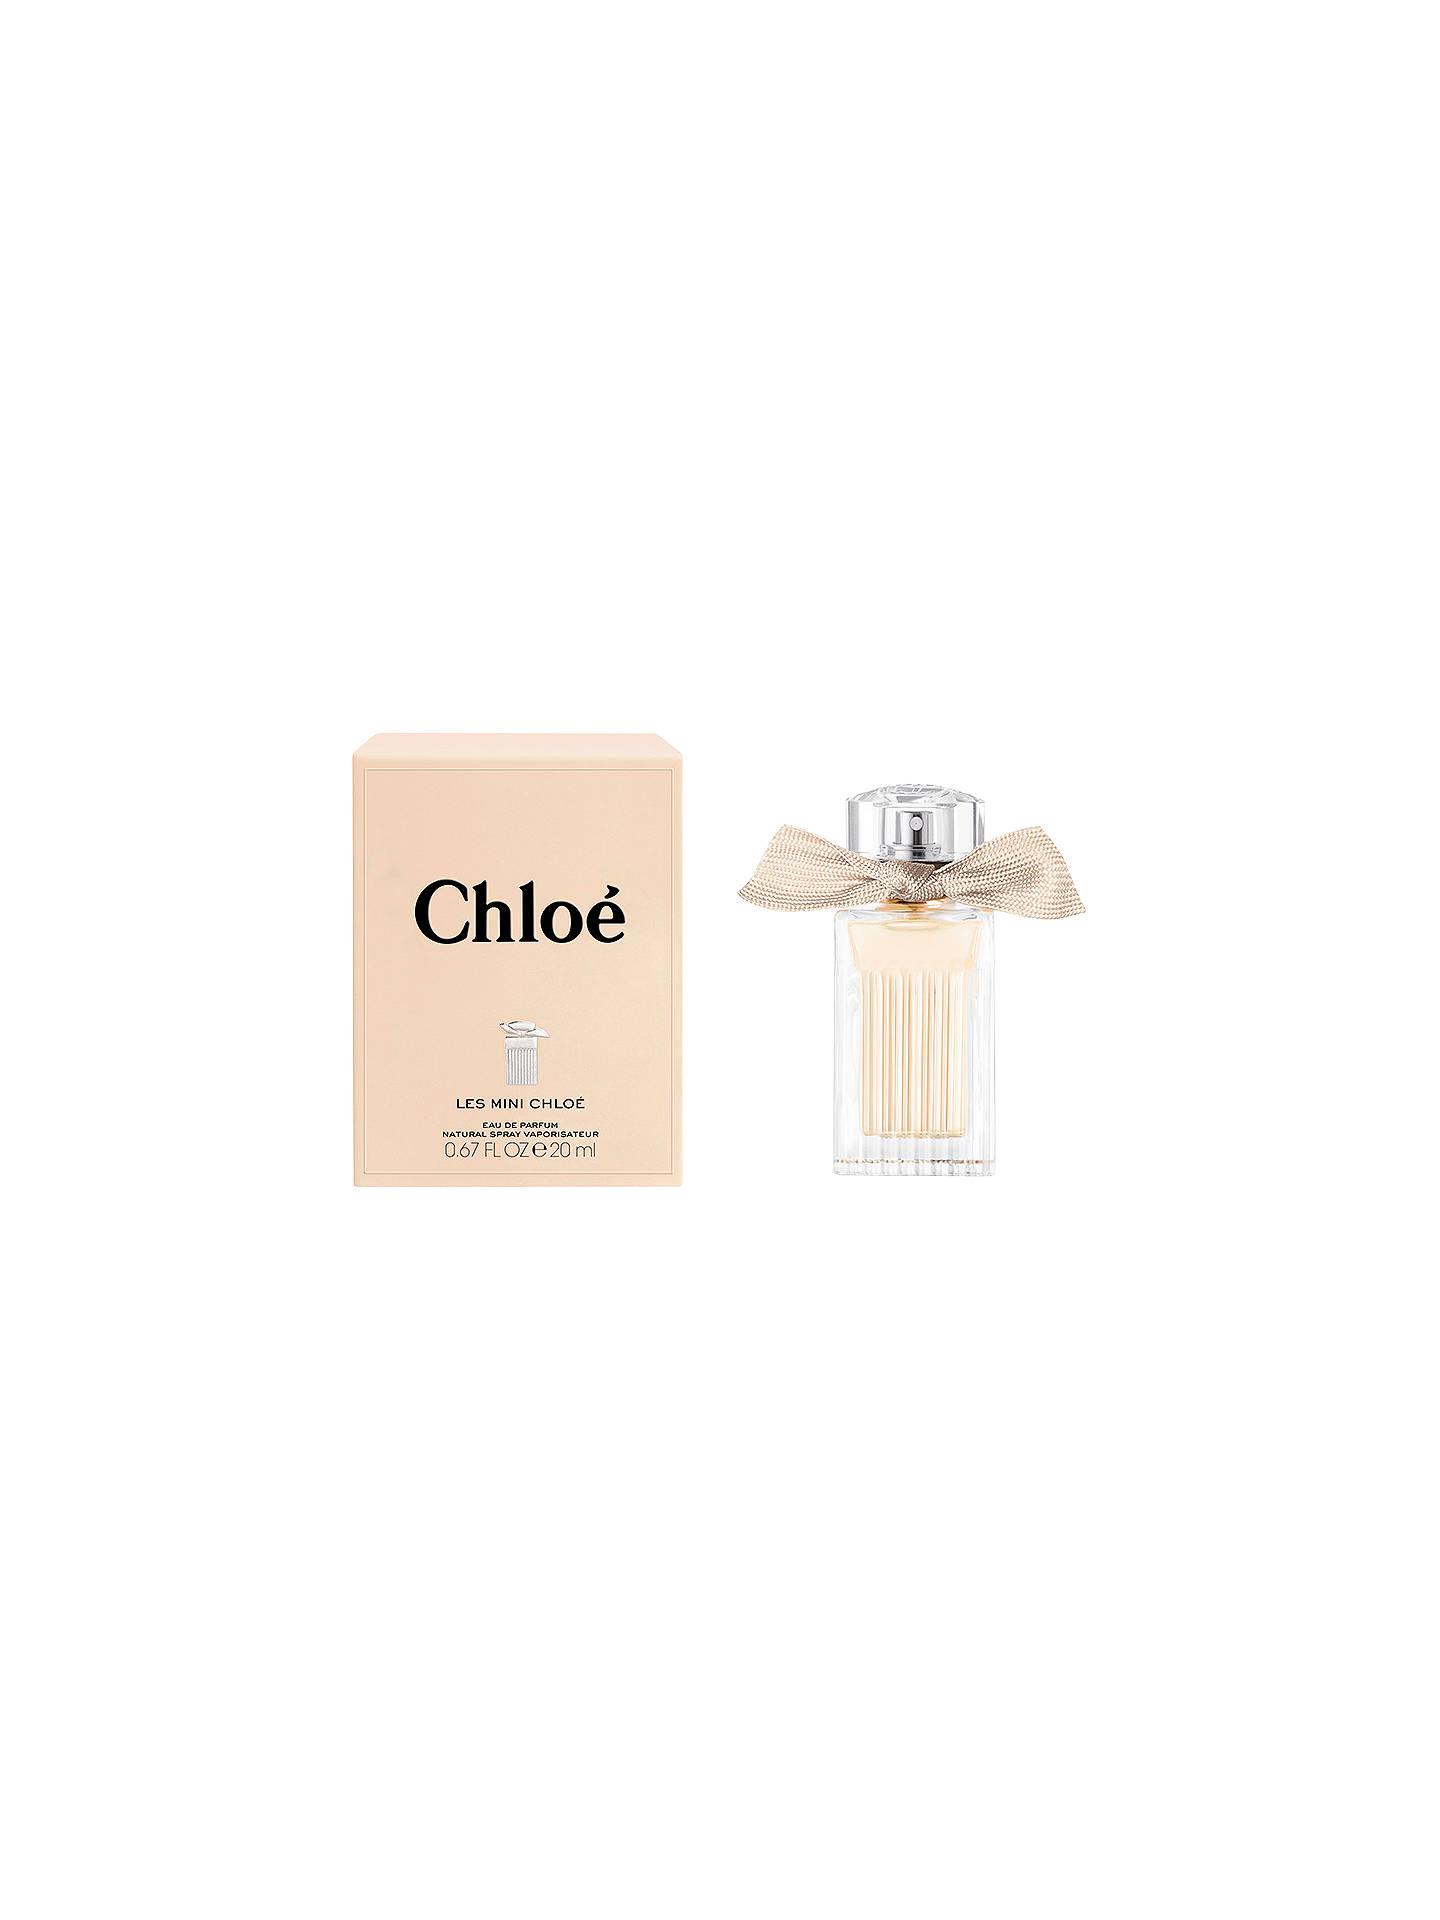 Chloé Les Mini Chloé Eau de Parfum, 20ml at John Lewis & Partners